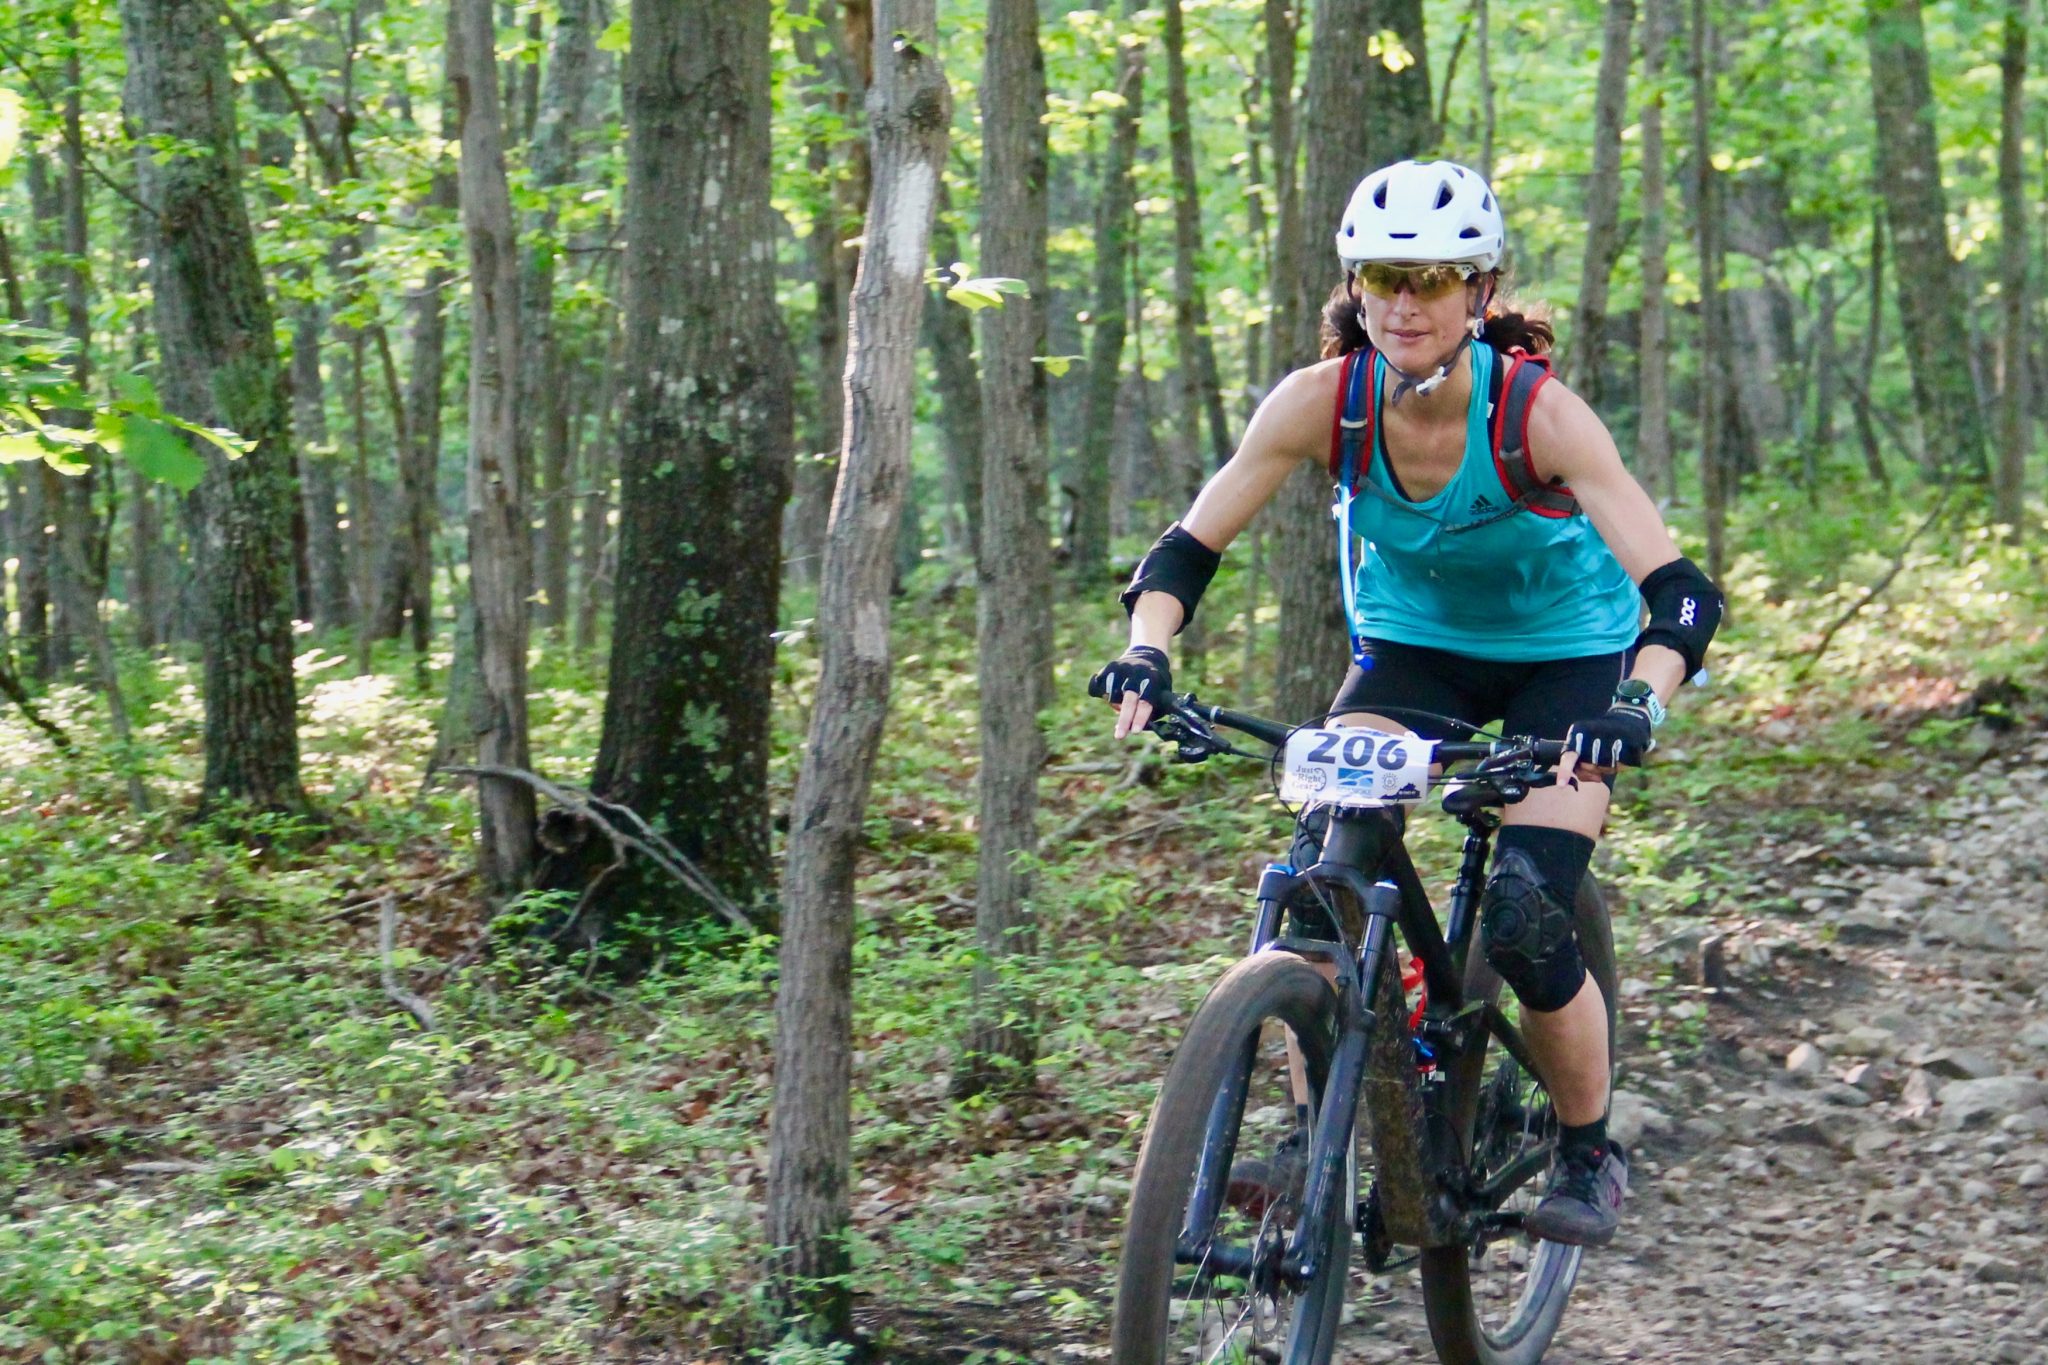 Female mountain bike rider in Roanoke